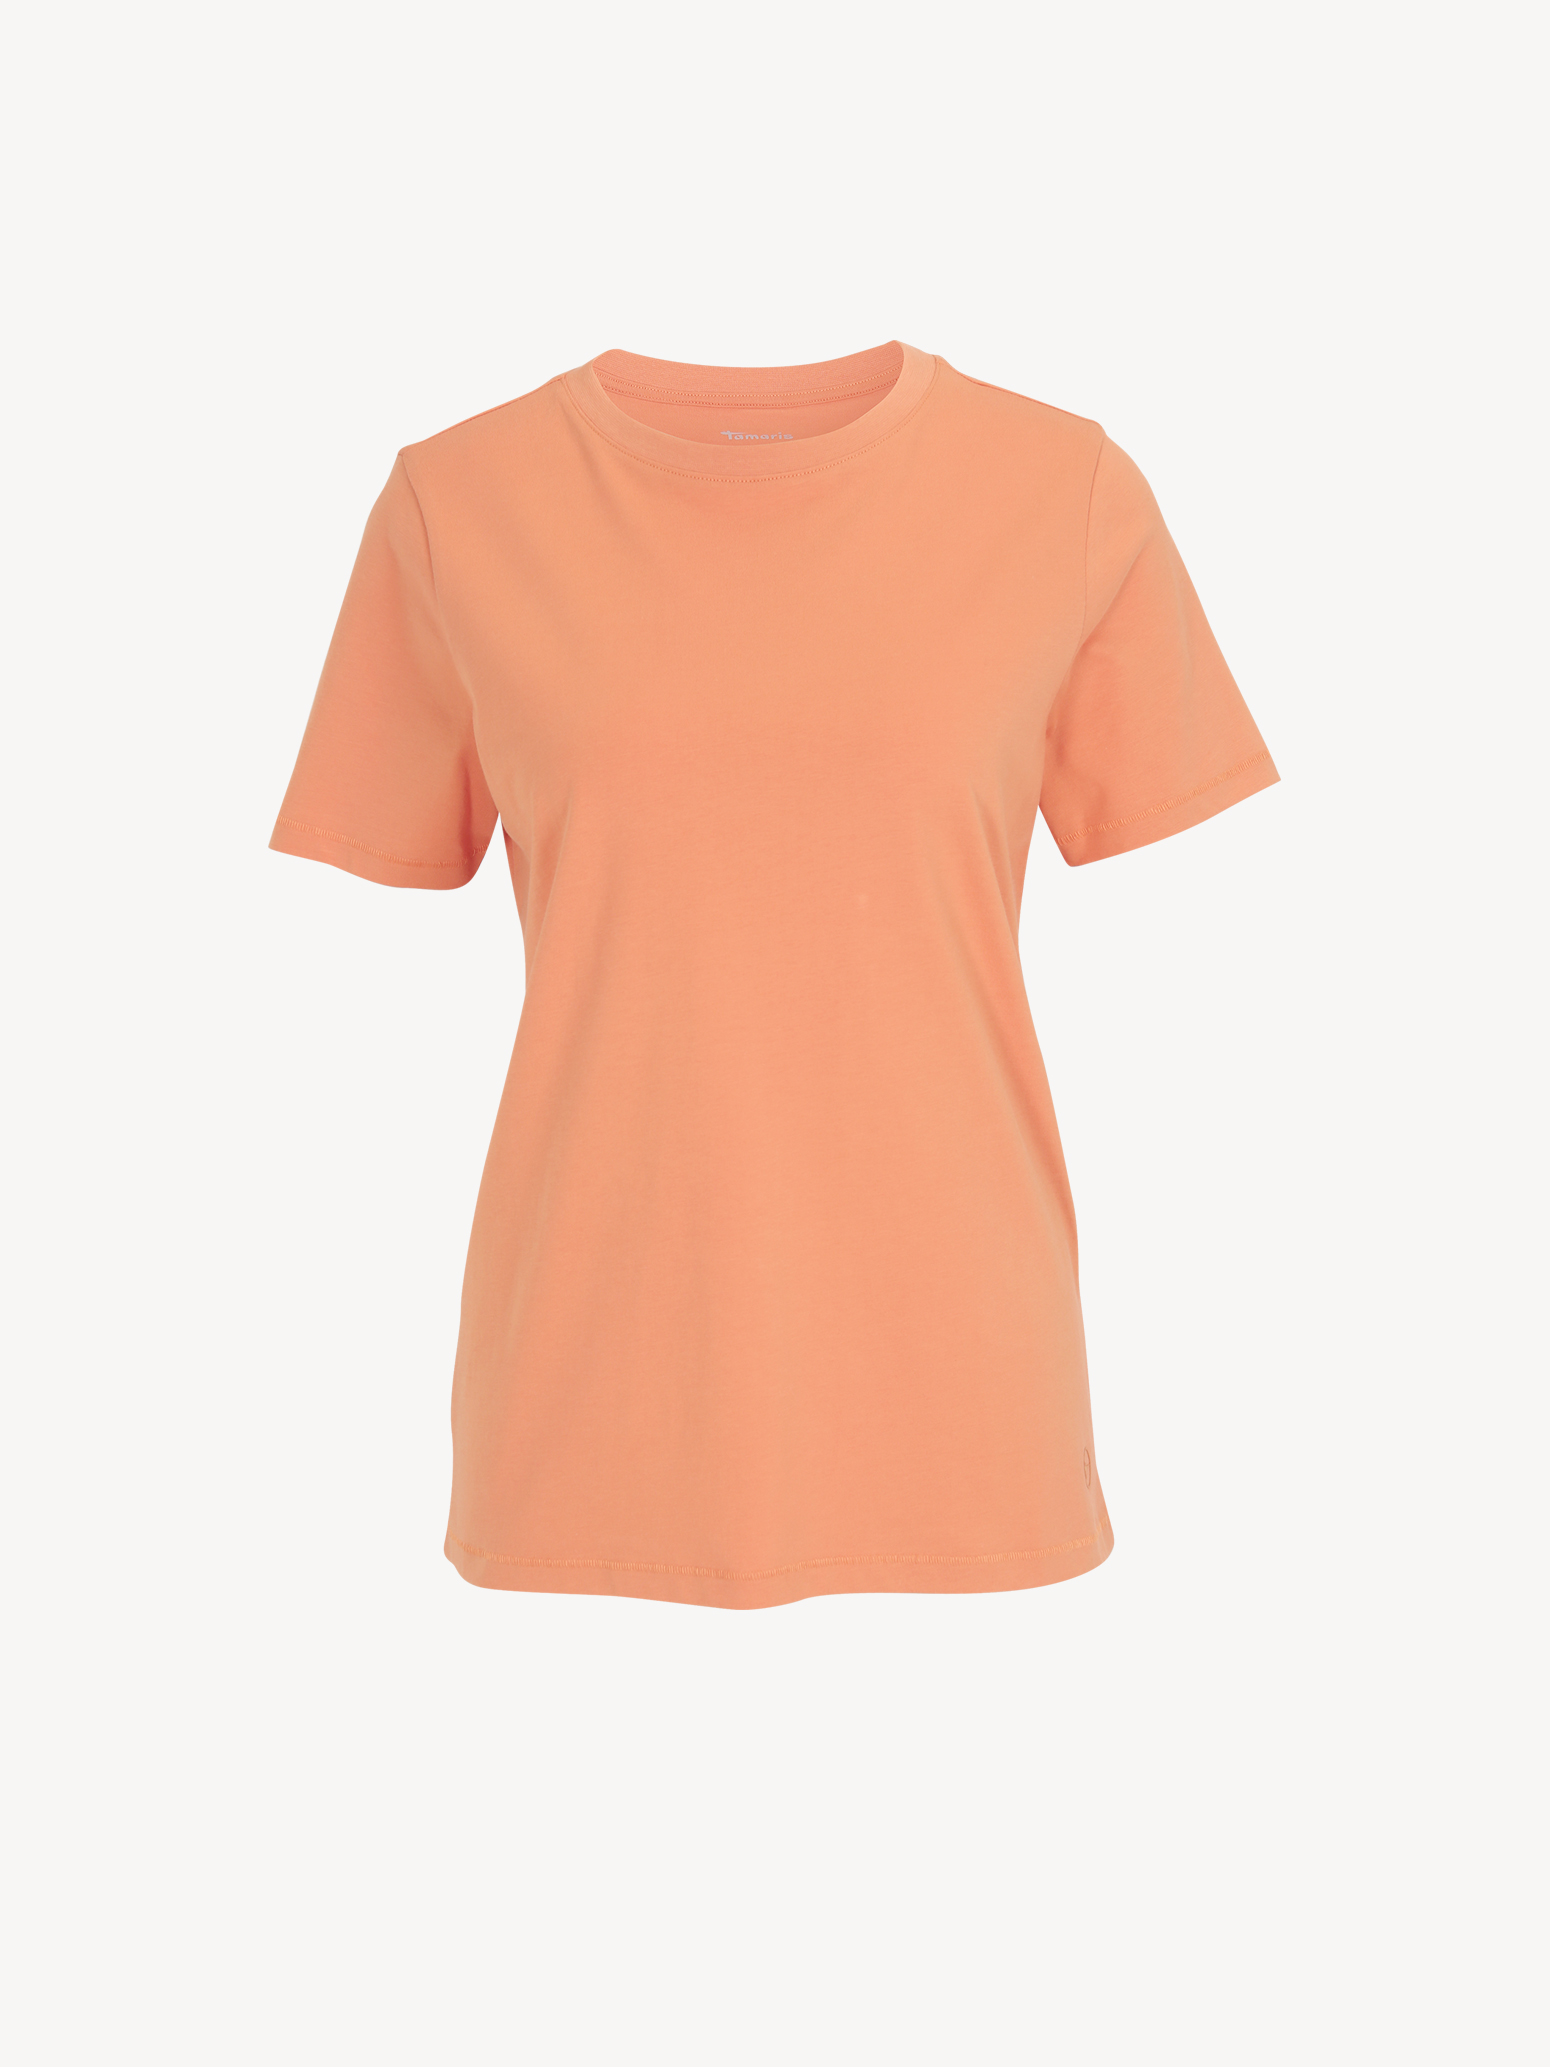 T-Shirt - orange TAW0088-30043: Tamaris T-Shirts online kaufen!